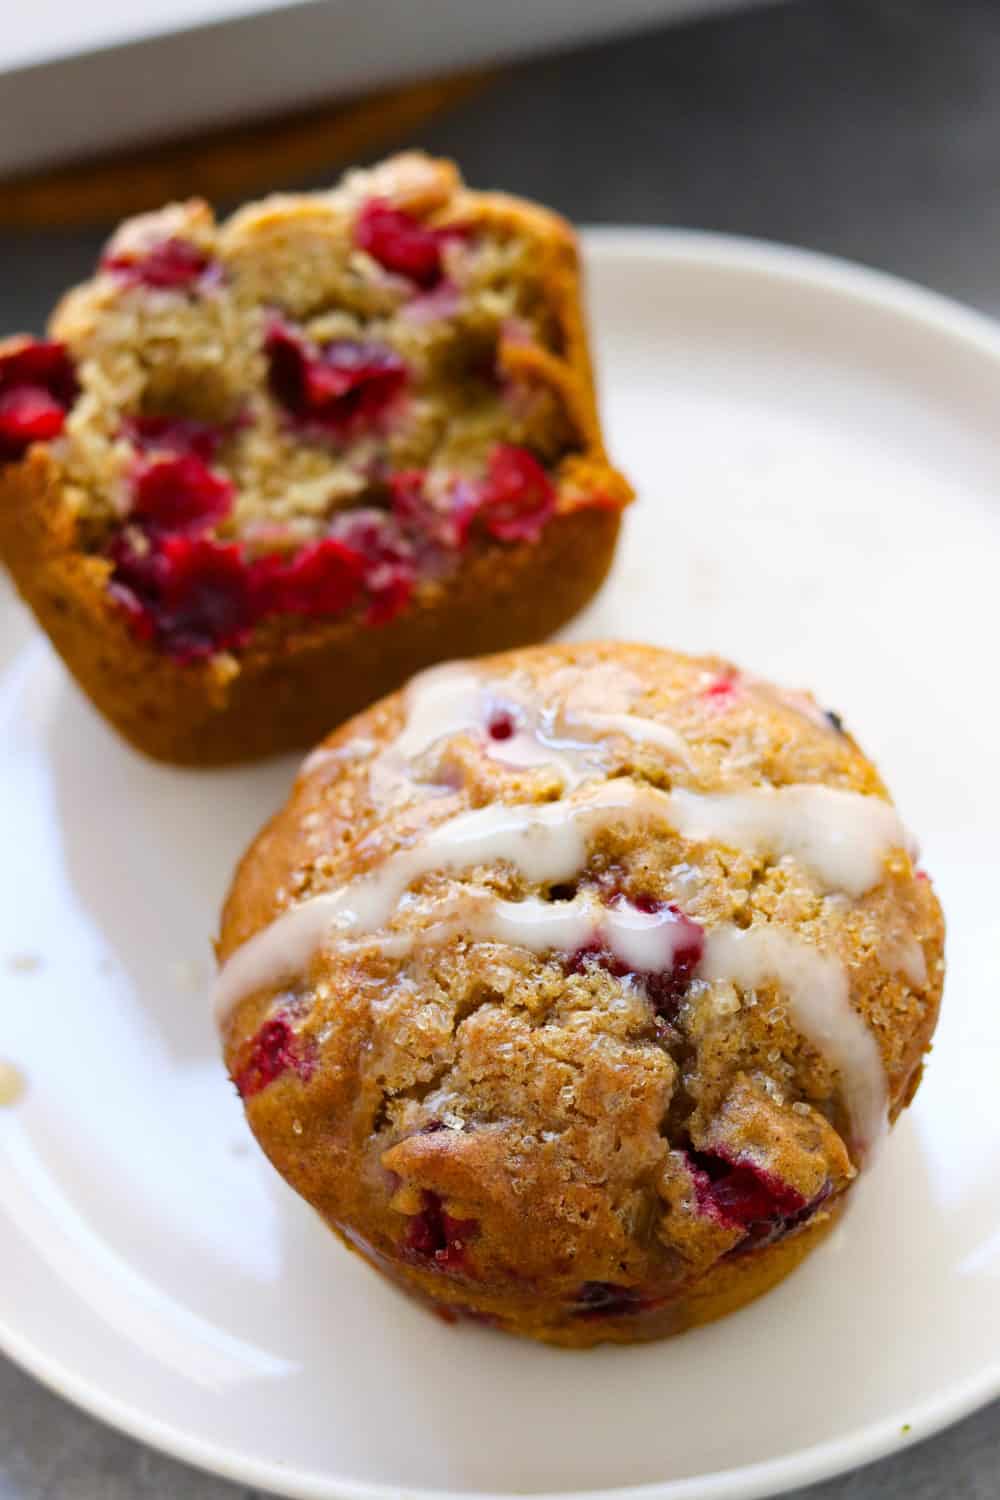 cranberry oranje muffin met glazuur erop bovenop een wit rond bord